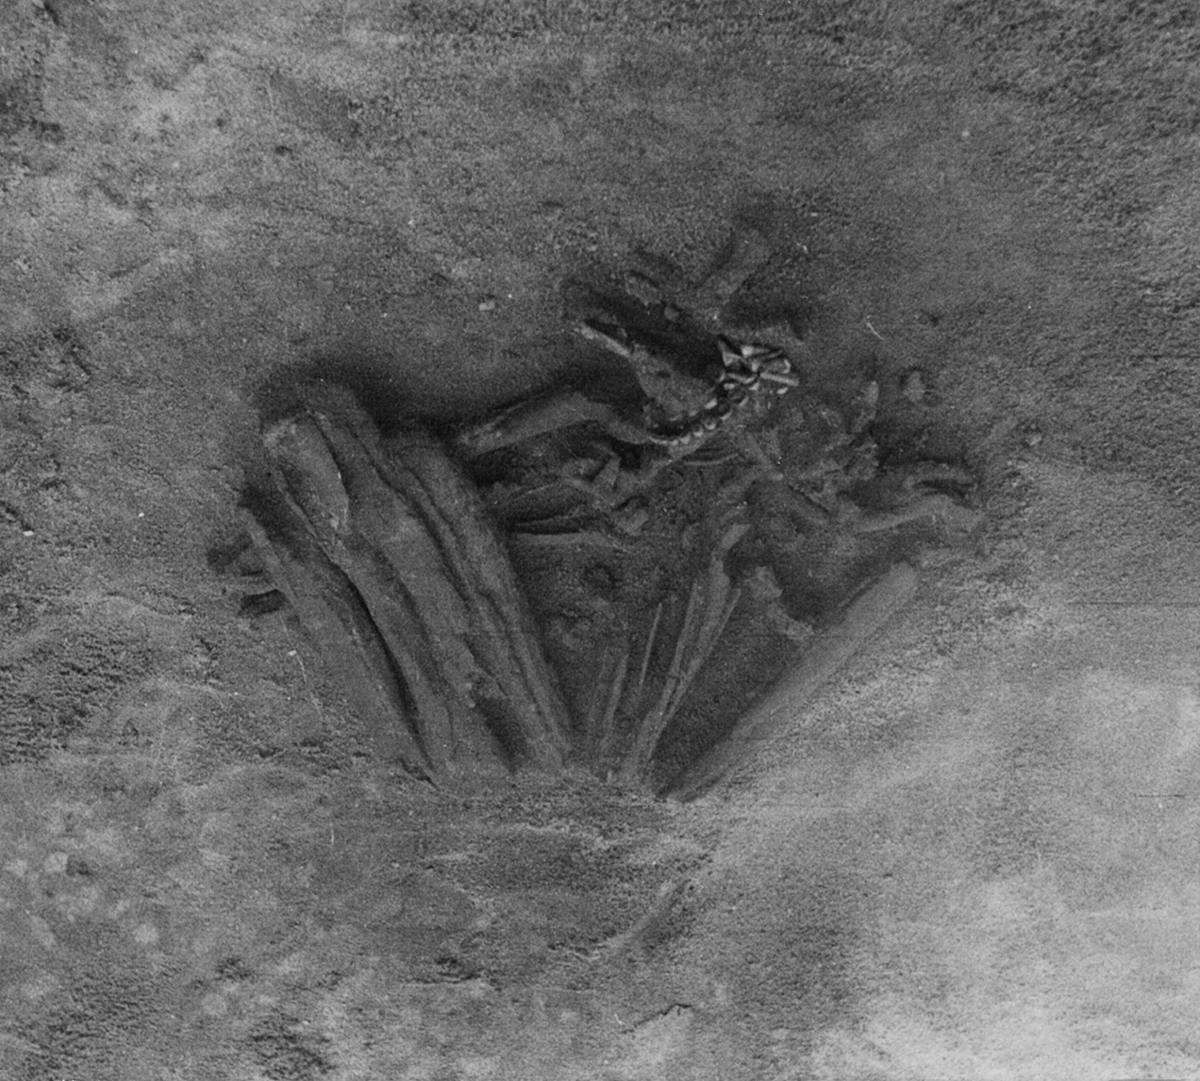 นักโบราณคดีเชื่อว่าโครงกระดูกมนุษย์อายุ 8,000 ปีจากโปรตุเกสเป็นมัมมี่ที่เก่าแก่ที่สุดในโลก 2